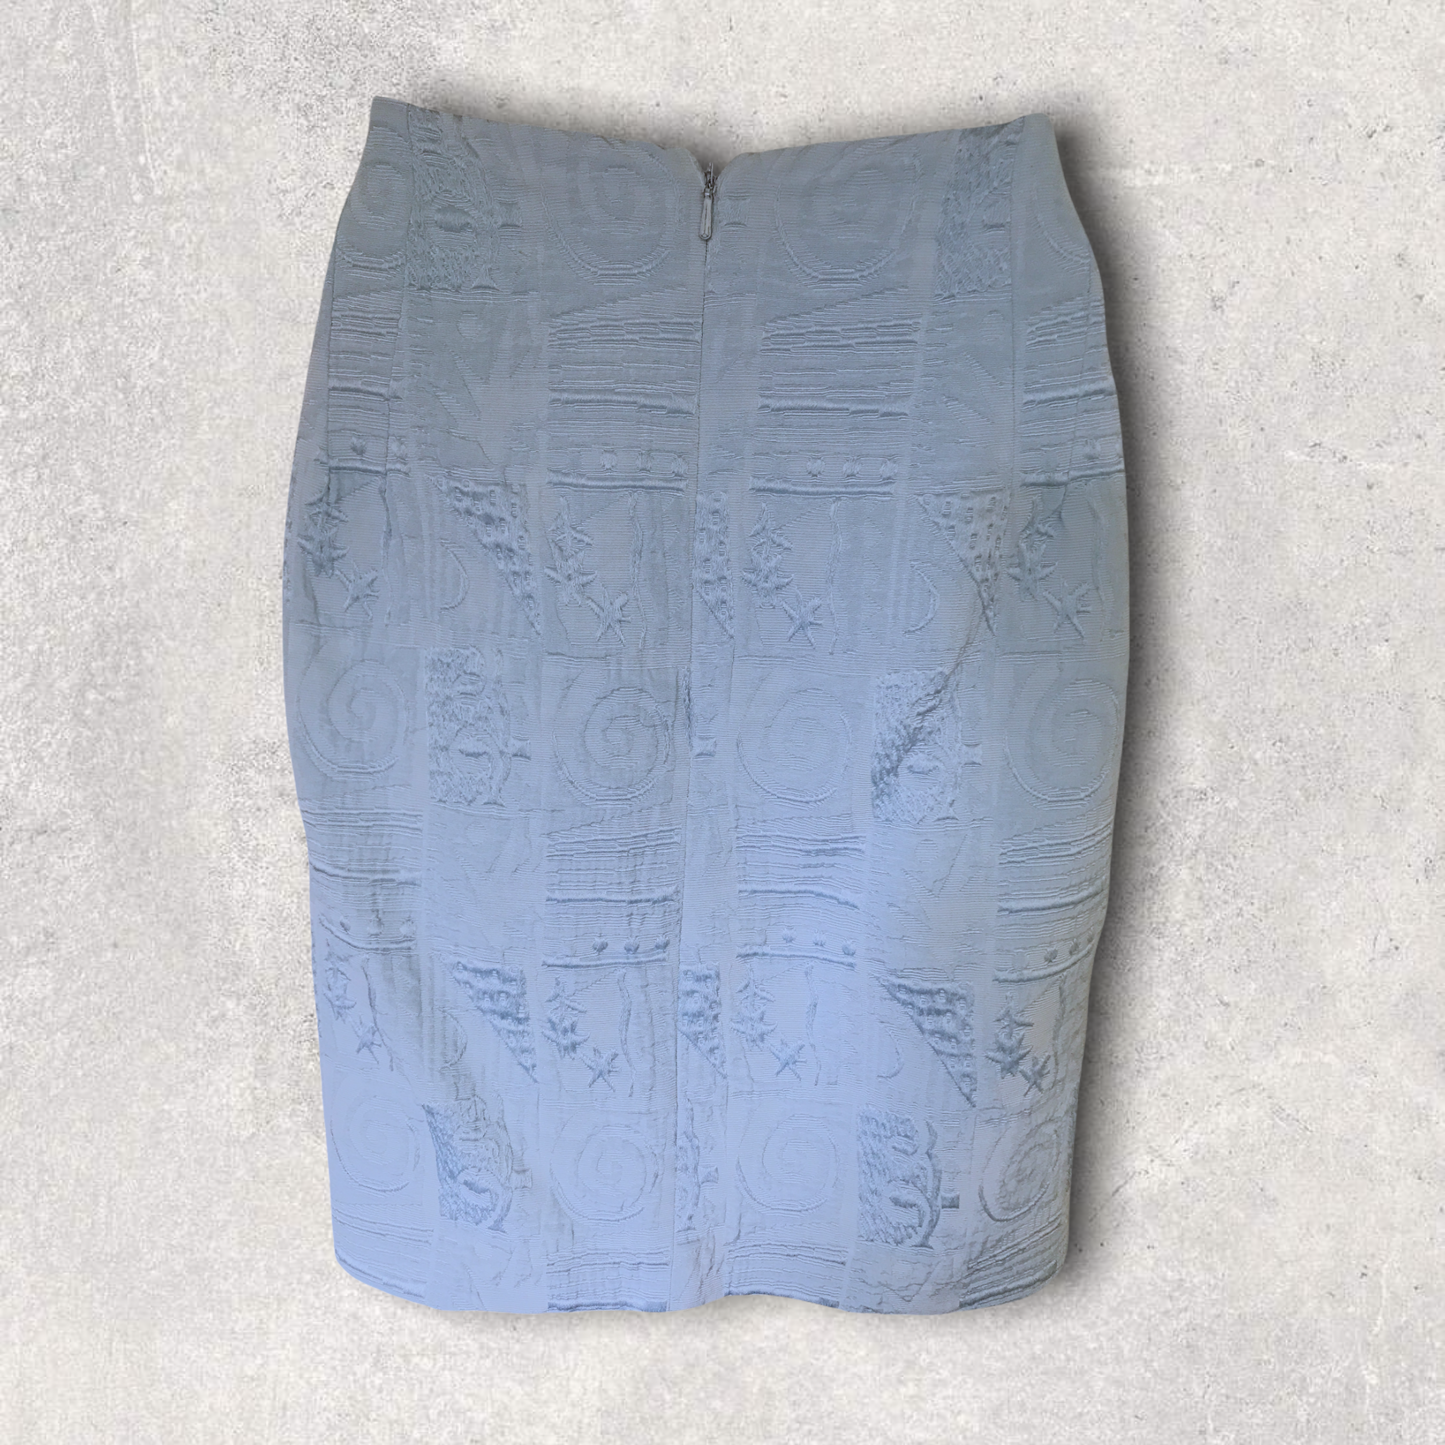 Karen Millen Vintage Light Blue Mini Pencil Skirt 29" waist UK 14 US 10 EU 42 Timeless Fashions